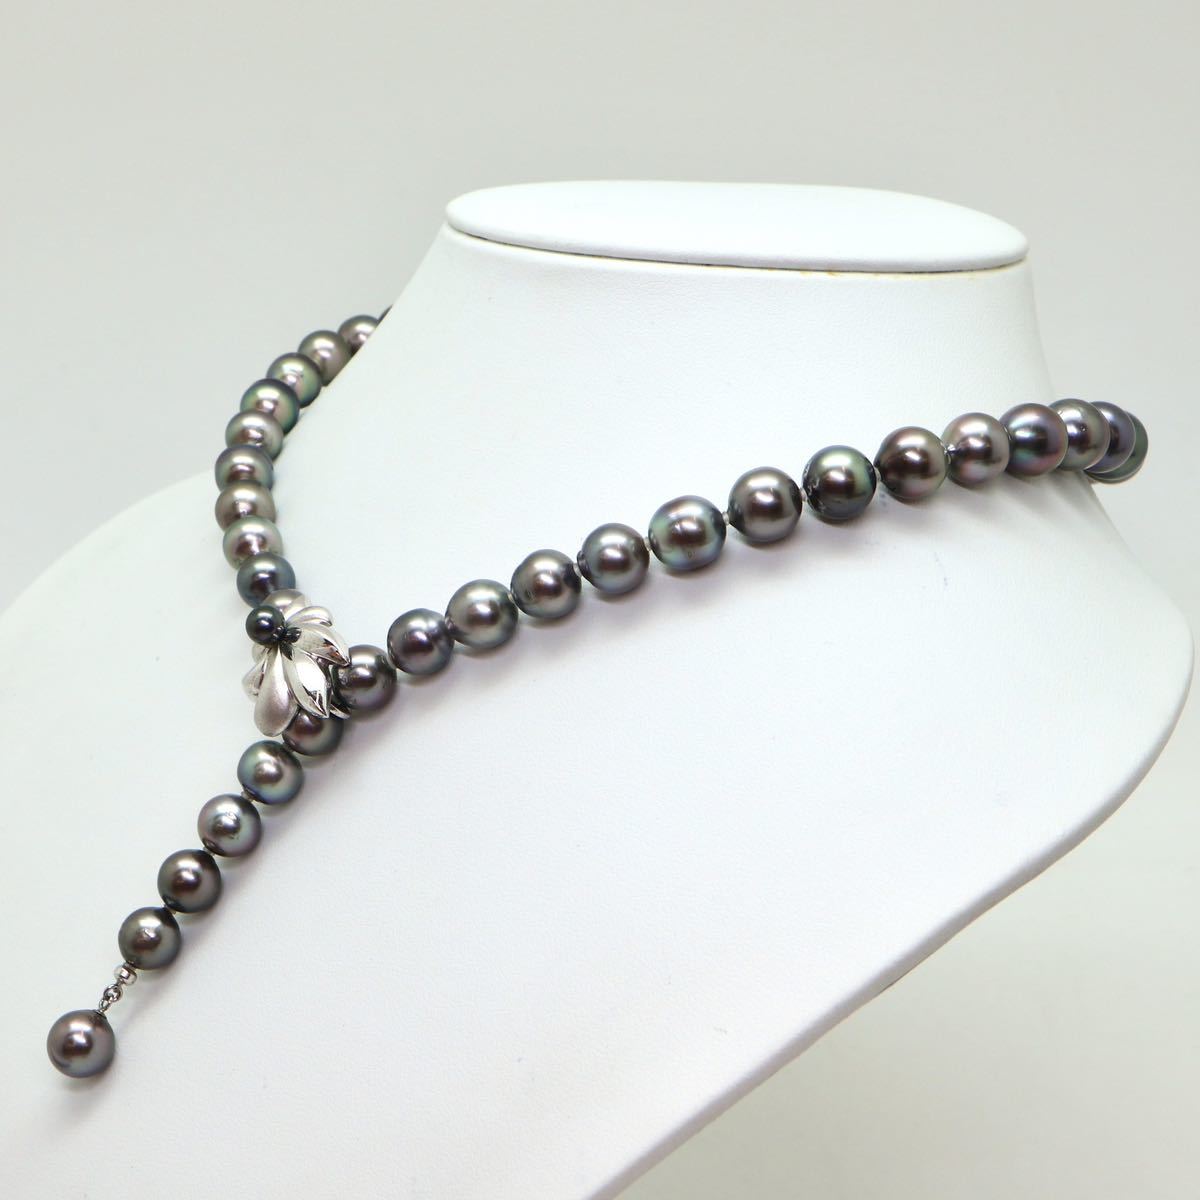 テリ良し!!《南洋黒蝶真珠ネックレス》J 8.0-11.0mm珠 58.8g 48cm pearl necklace ジュエリー jewelry EA5/EB1_画像3